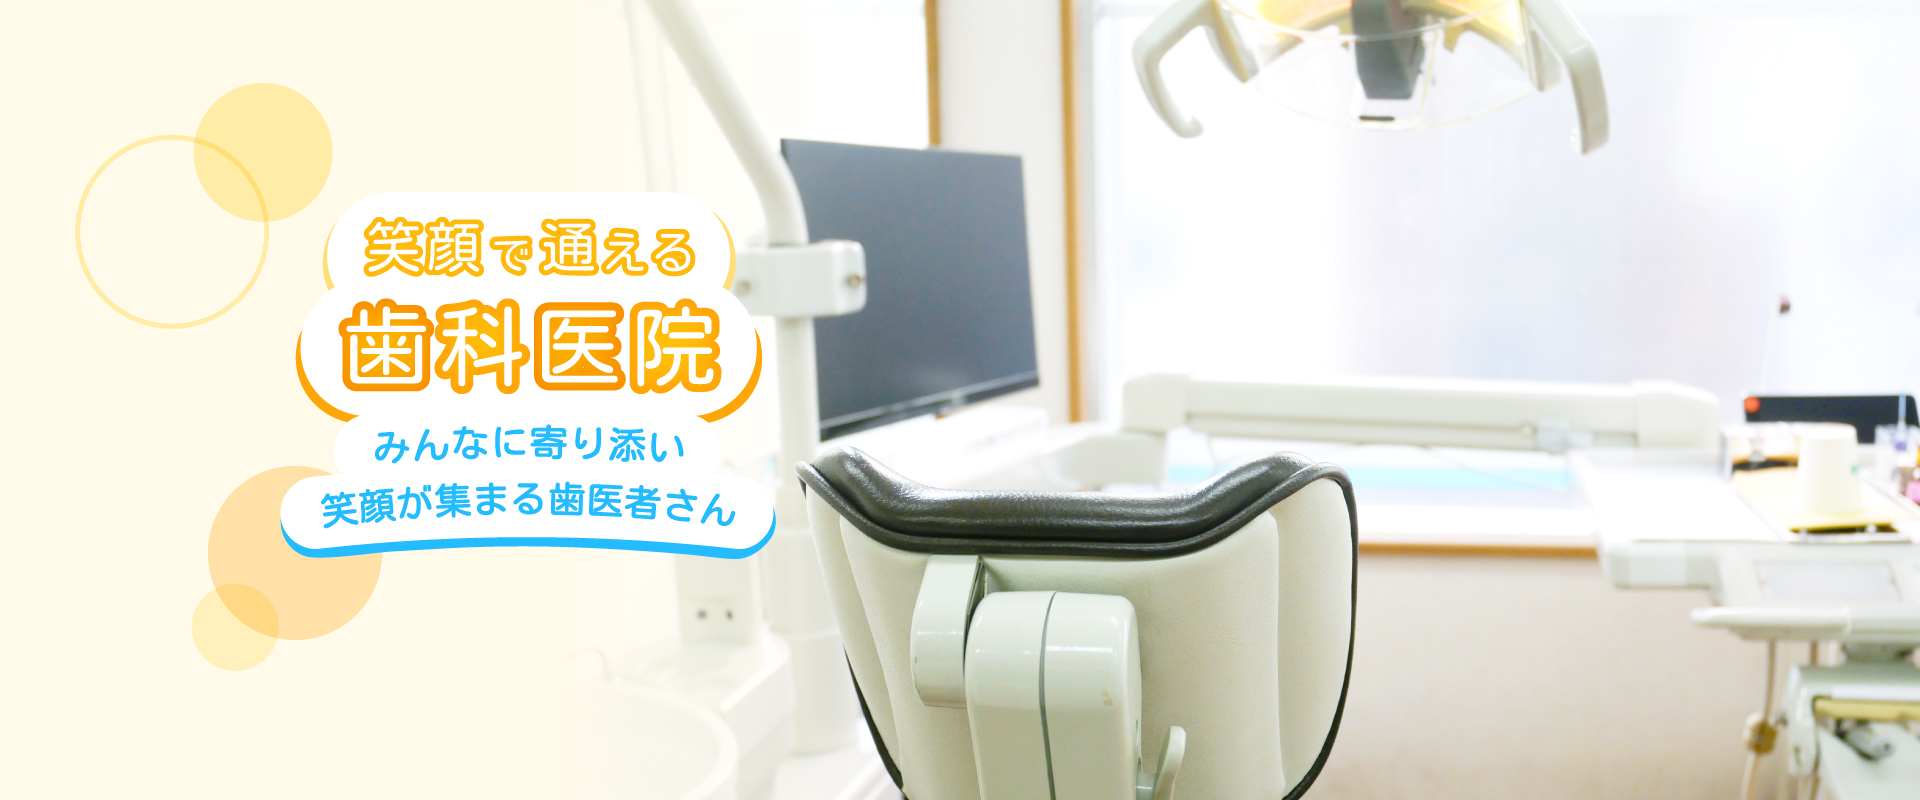 笑顔で通える歯科医院 みんなに寄り添い 笑顔が集まる歯医者さん